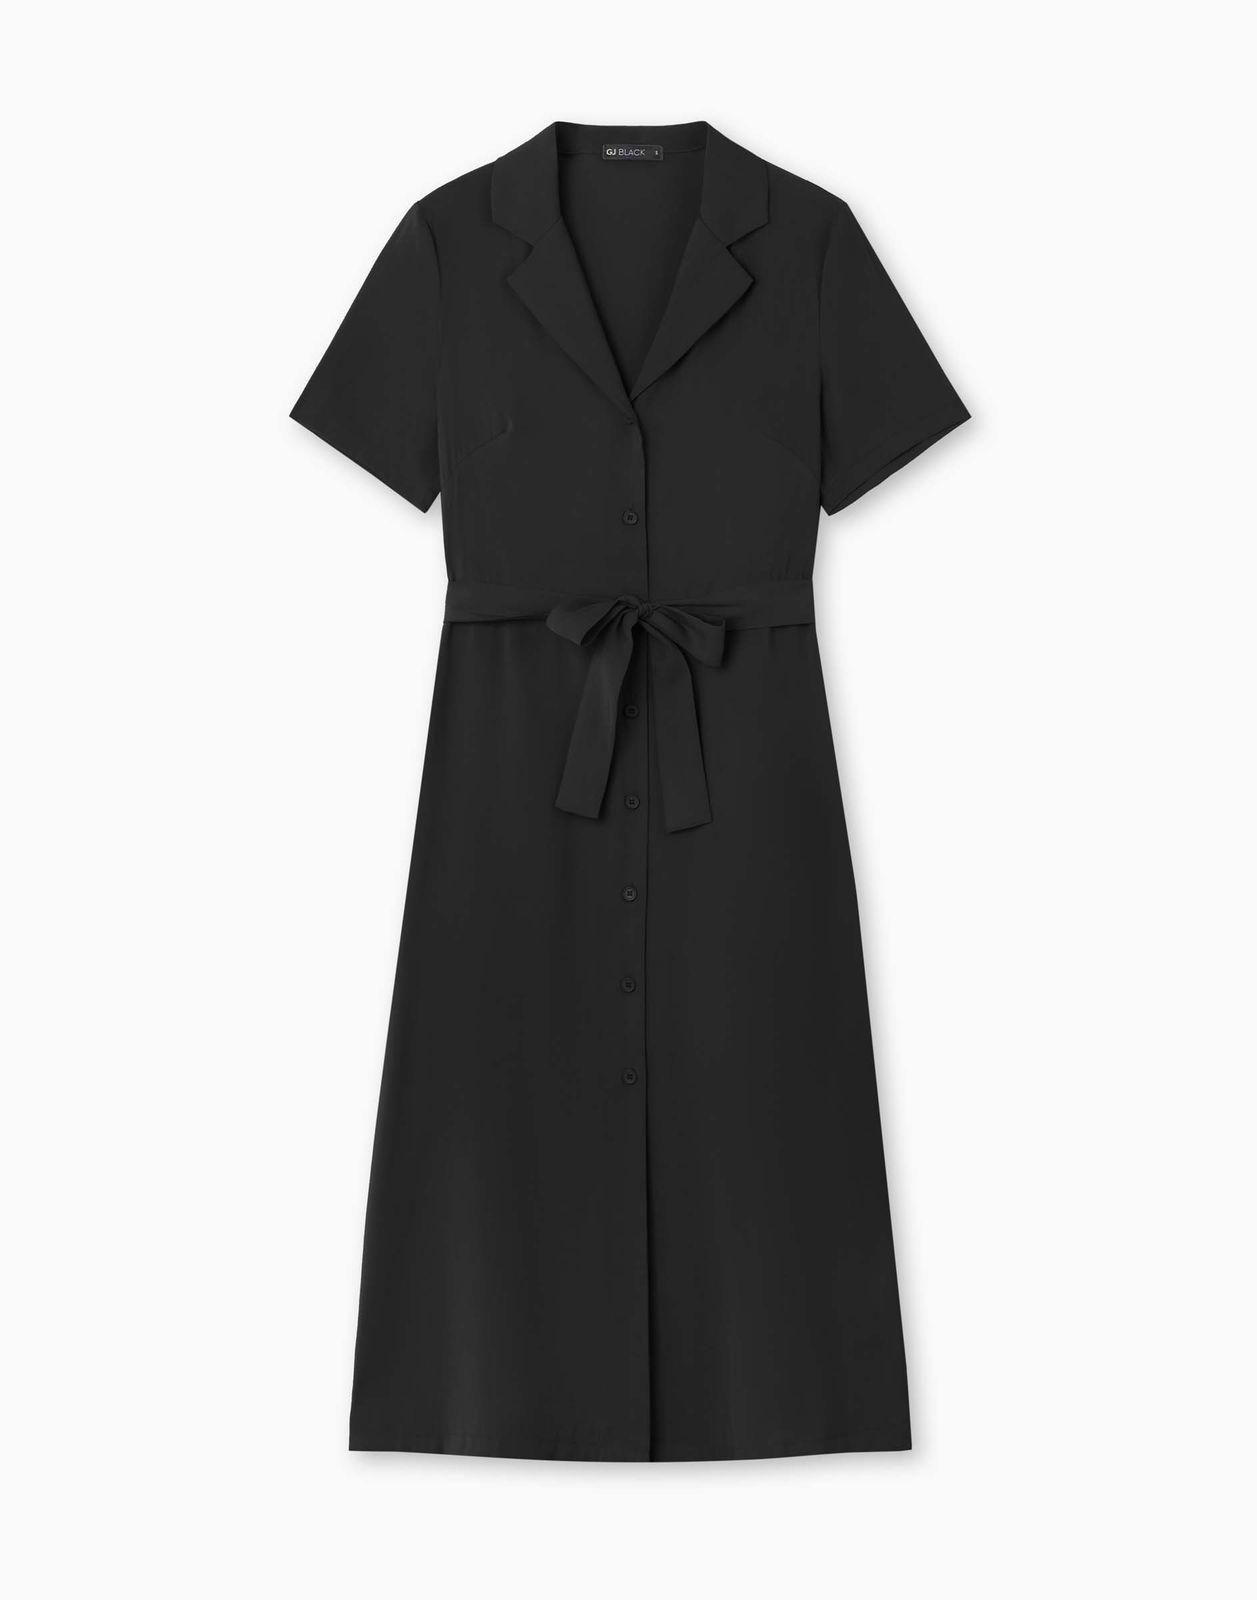 Платье женское Gloria Jeans GDR028322 черный S/170